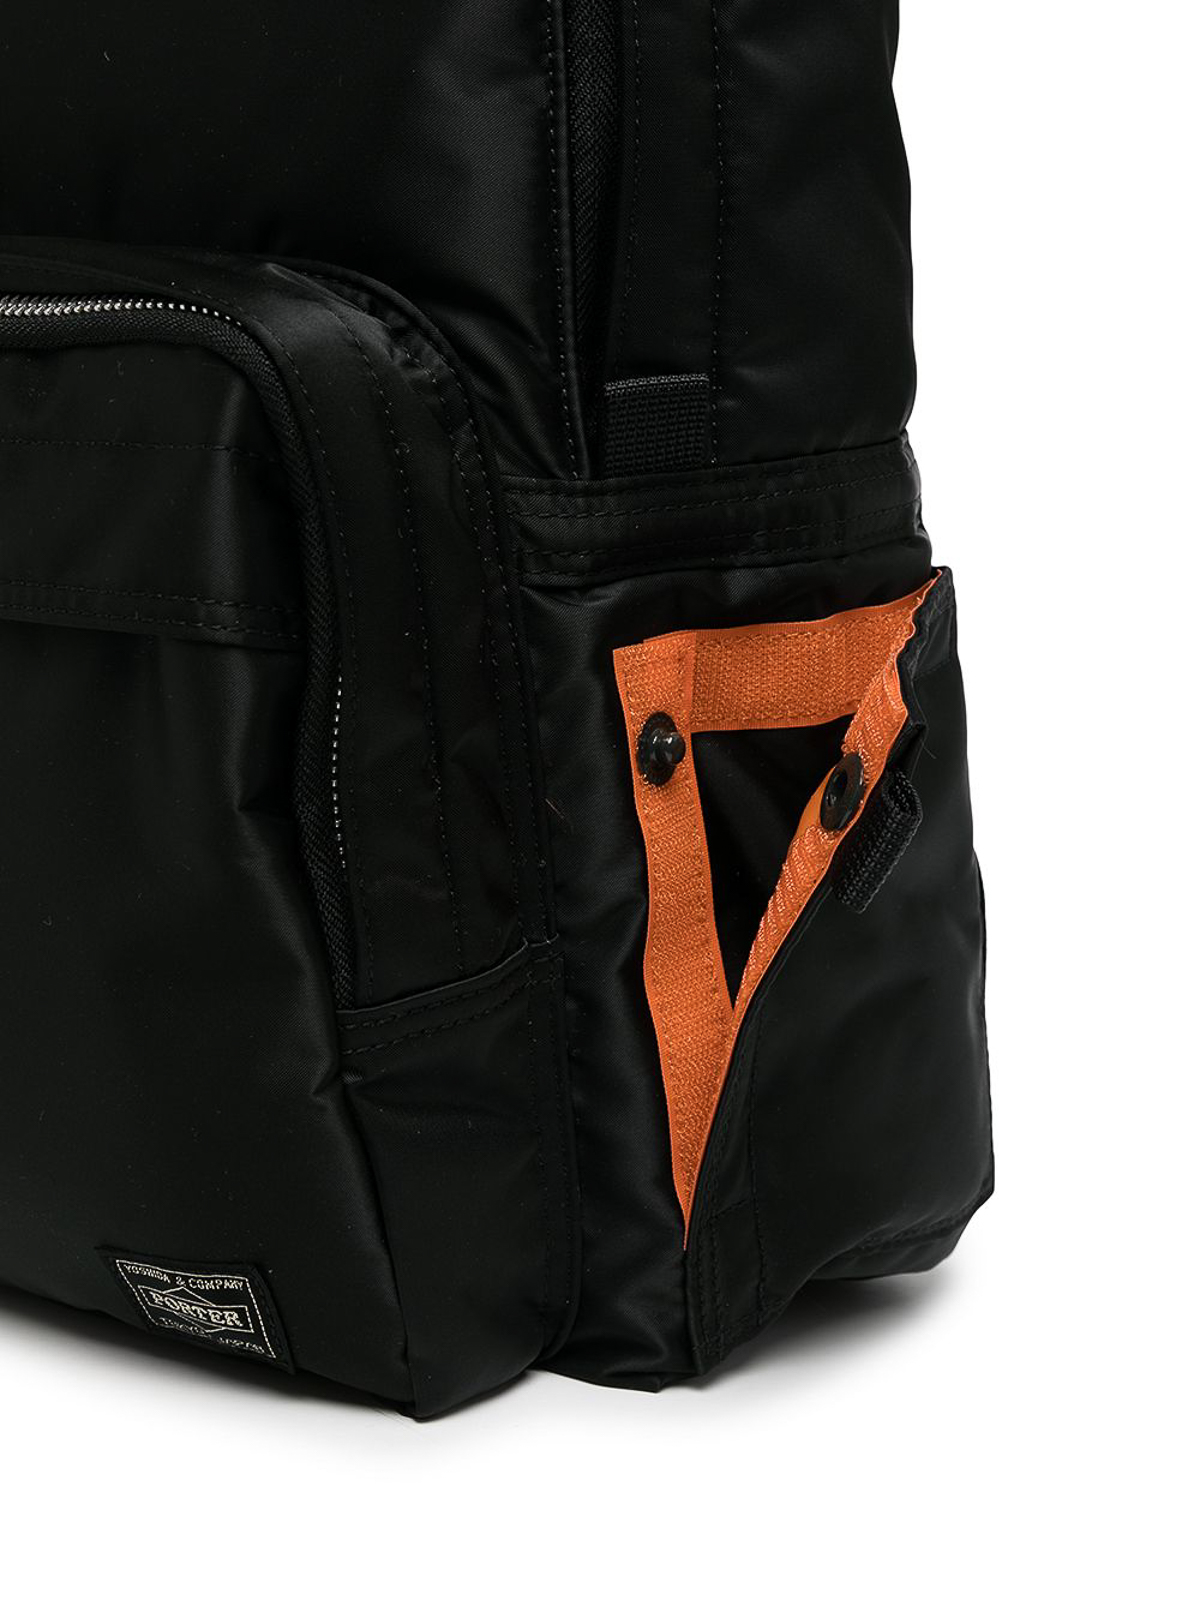 Porter - Yoshida & Co Tanker day backpack, BLACK